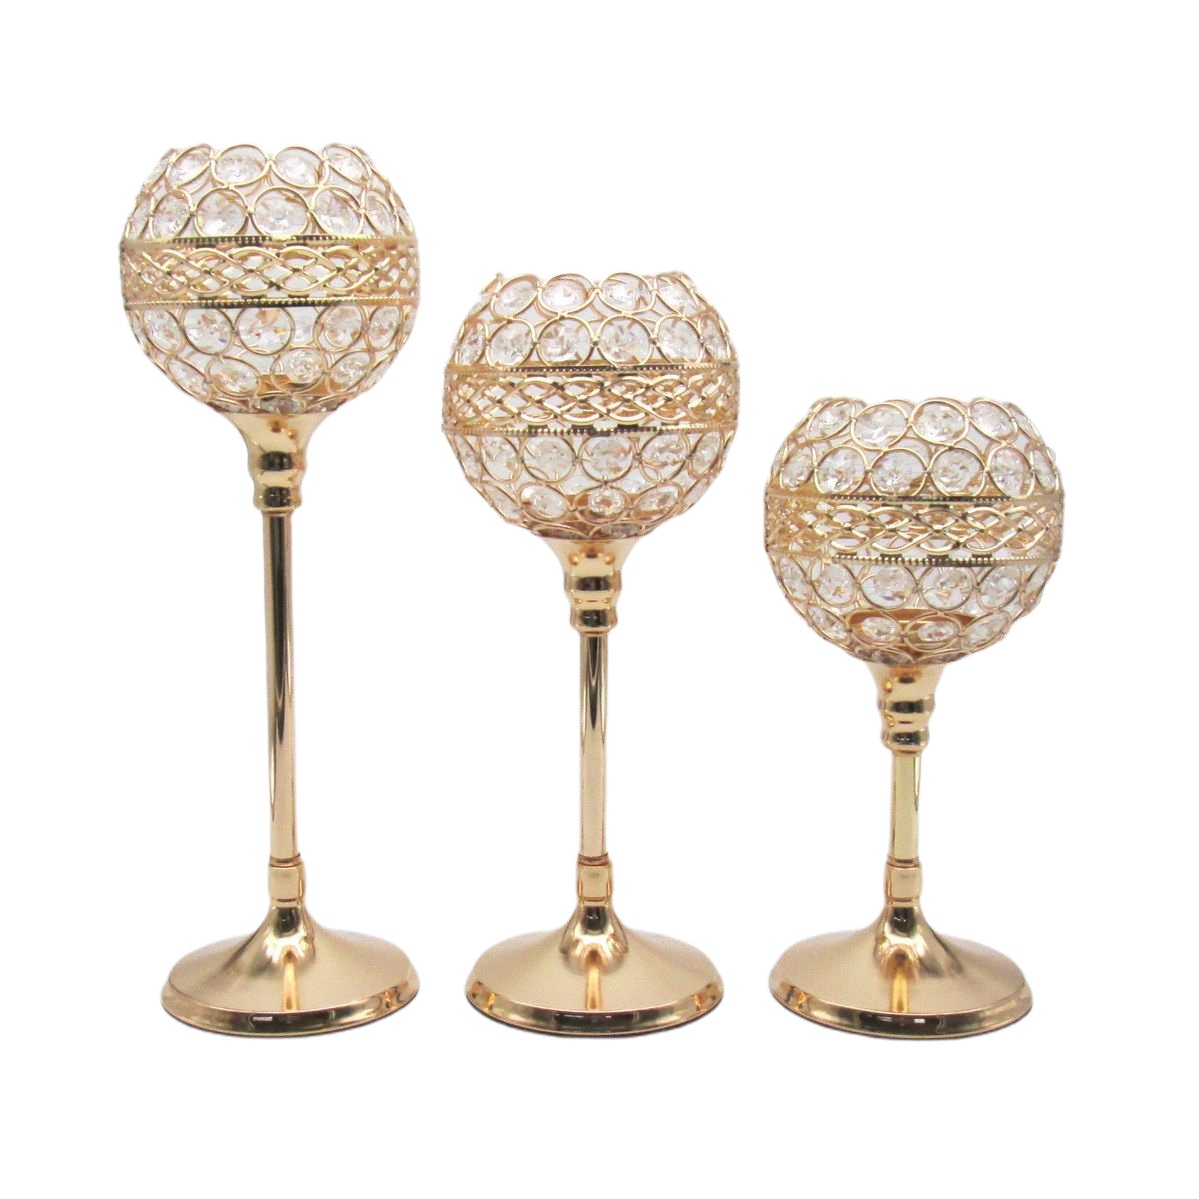 キャンドルホルダー ワイングラス風 クリスタル装飾 キラキラ (ゴールド, 大中小3個セット) | 輸入インテリア雑貨モノッコ